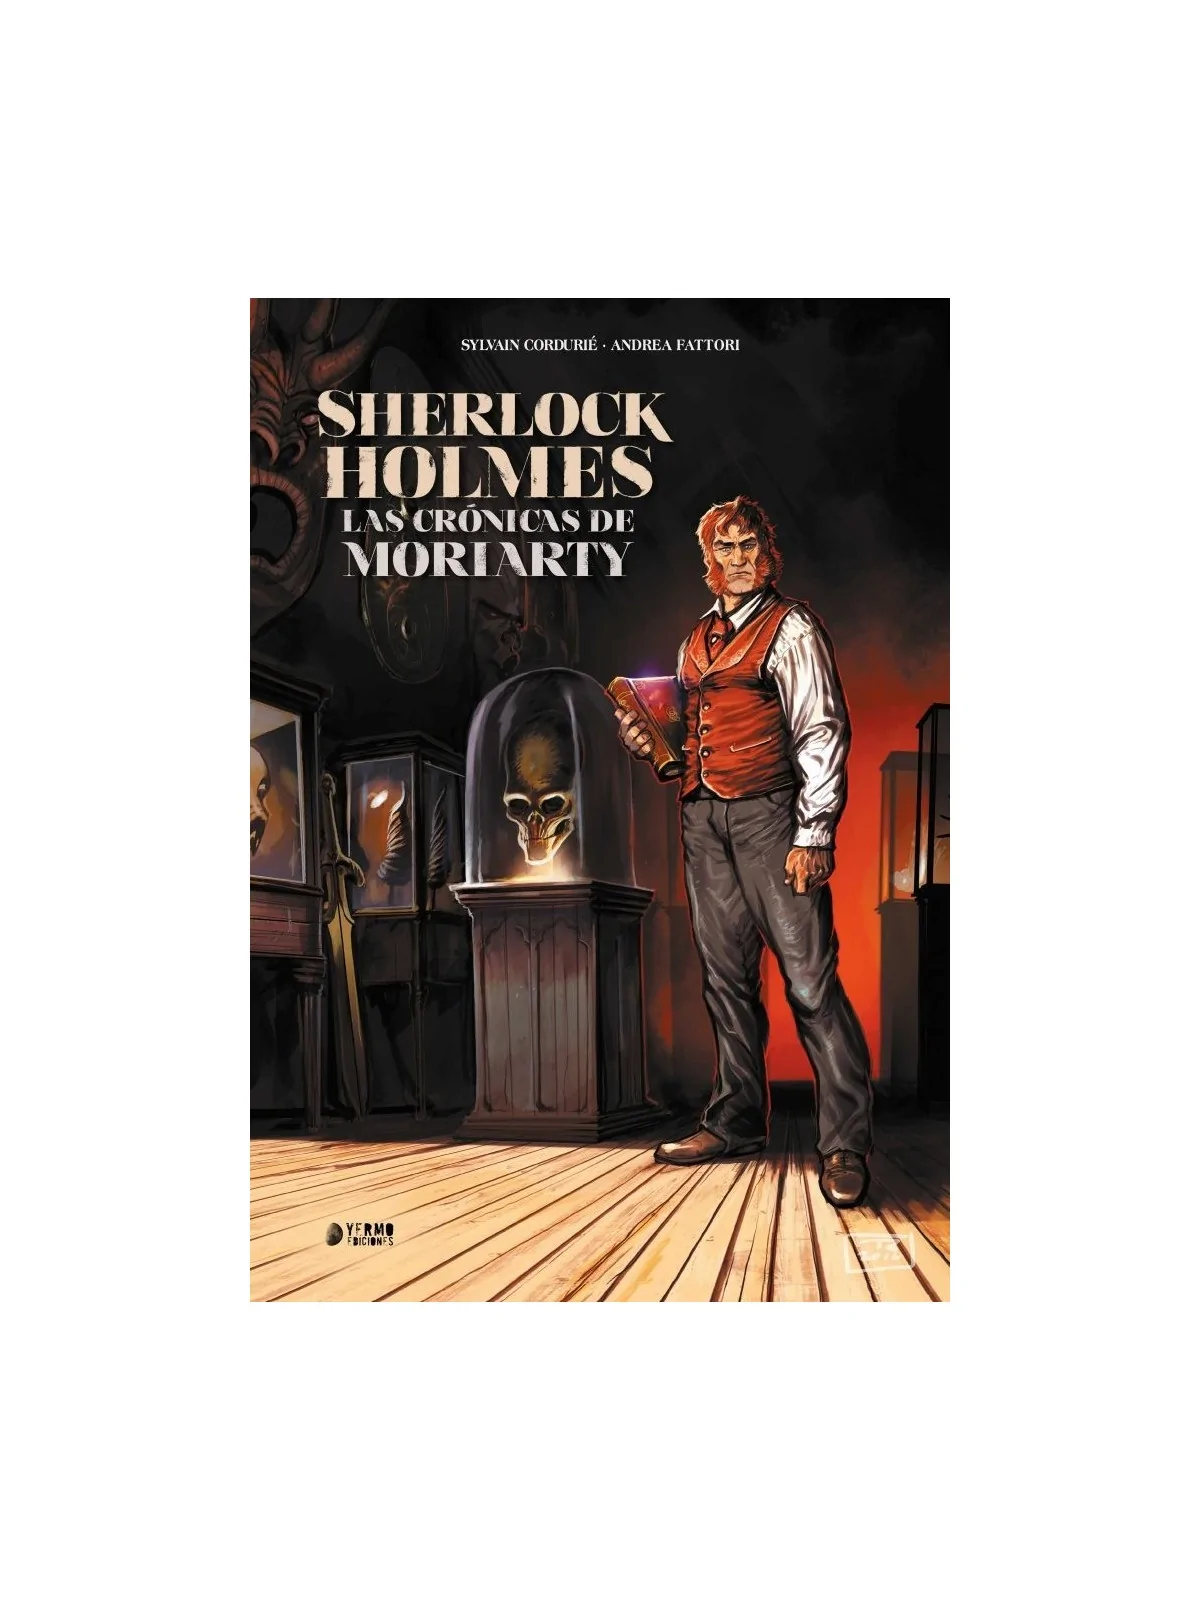 Comprar Sherlock Holmes. Las Crónicas de Moriarty barato al mejor prec